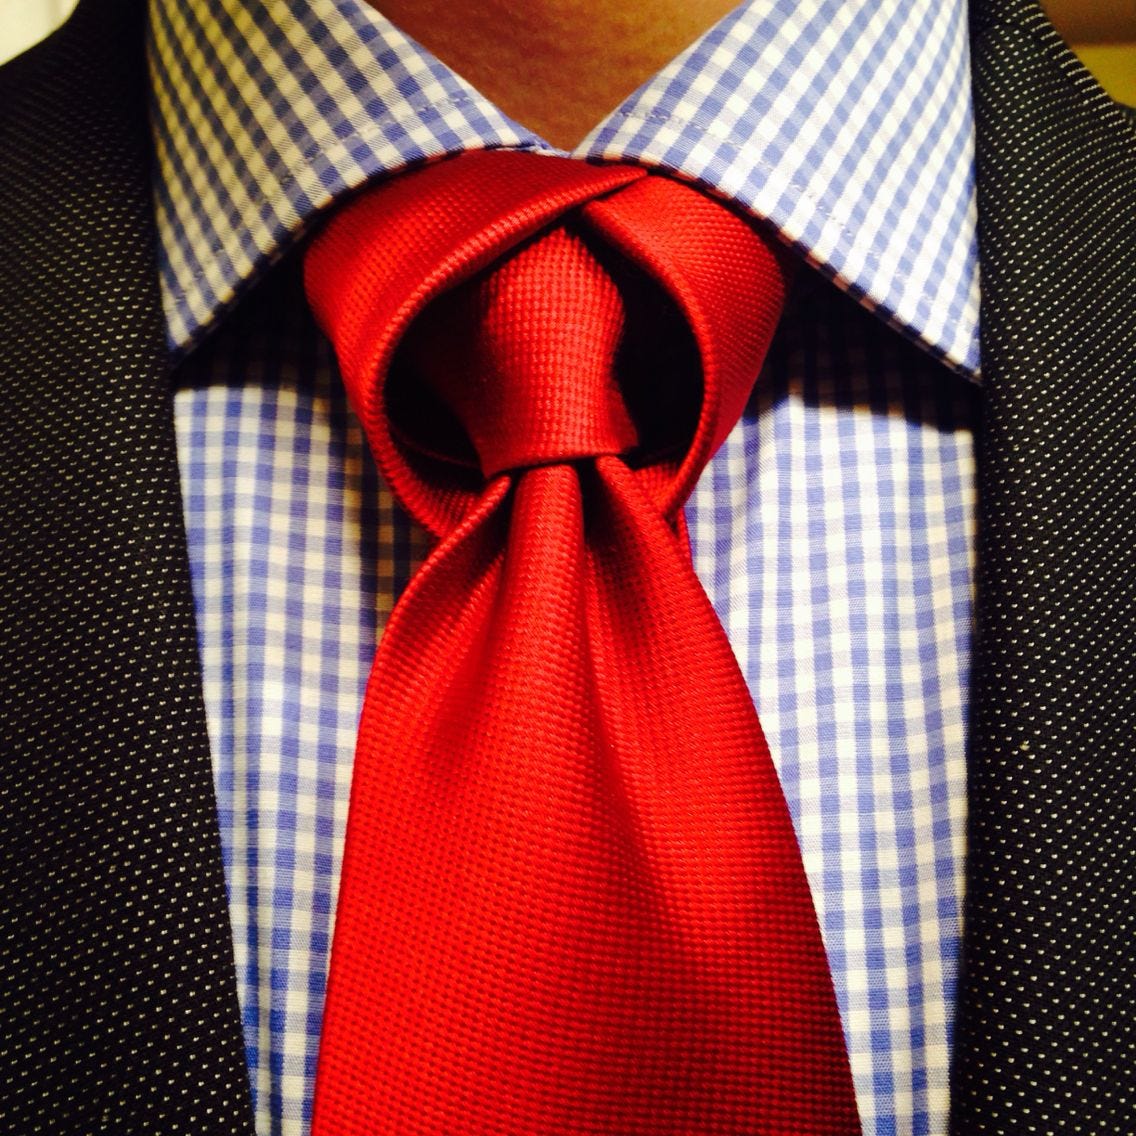 The tulip knot | Tie knots, Tie knots men, Cool tie knots